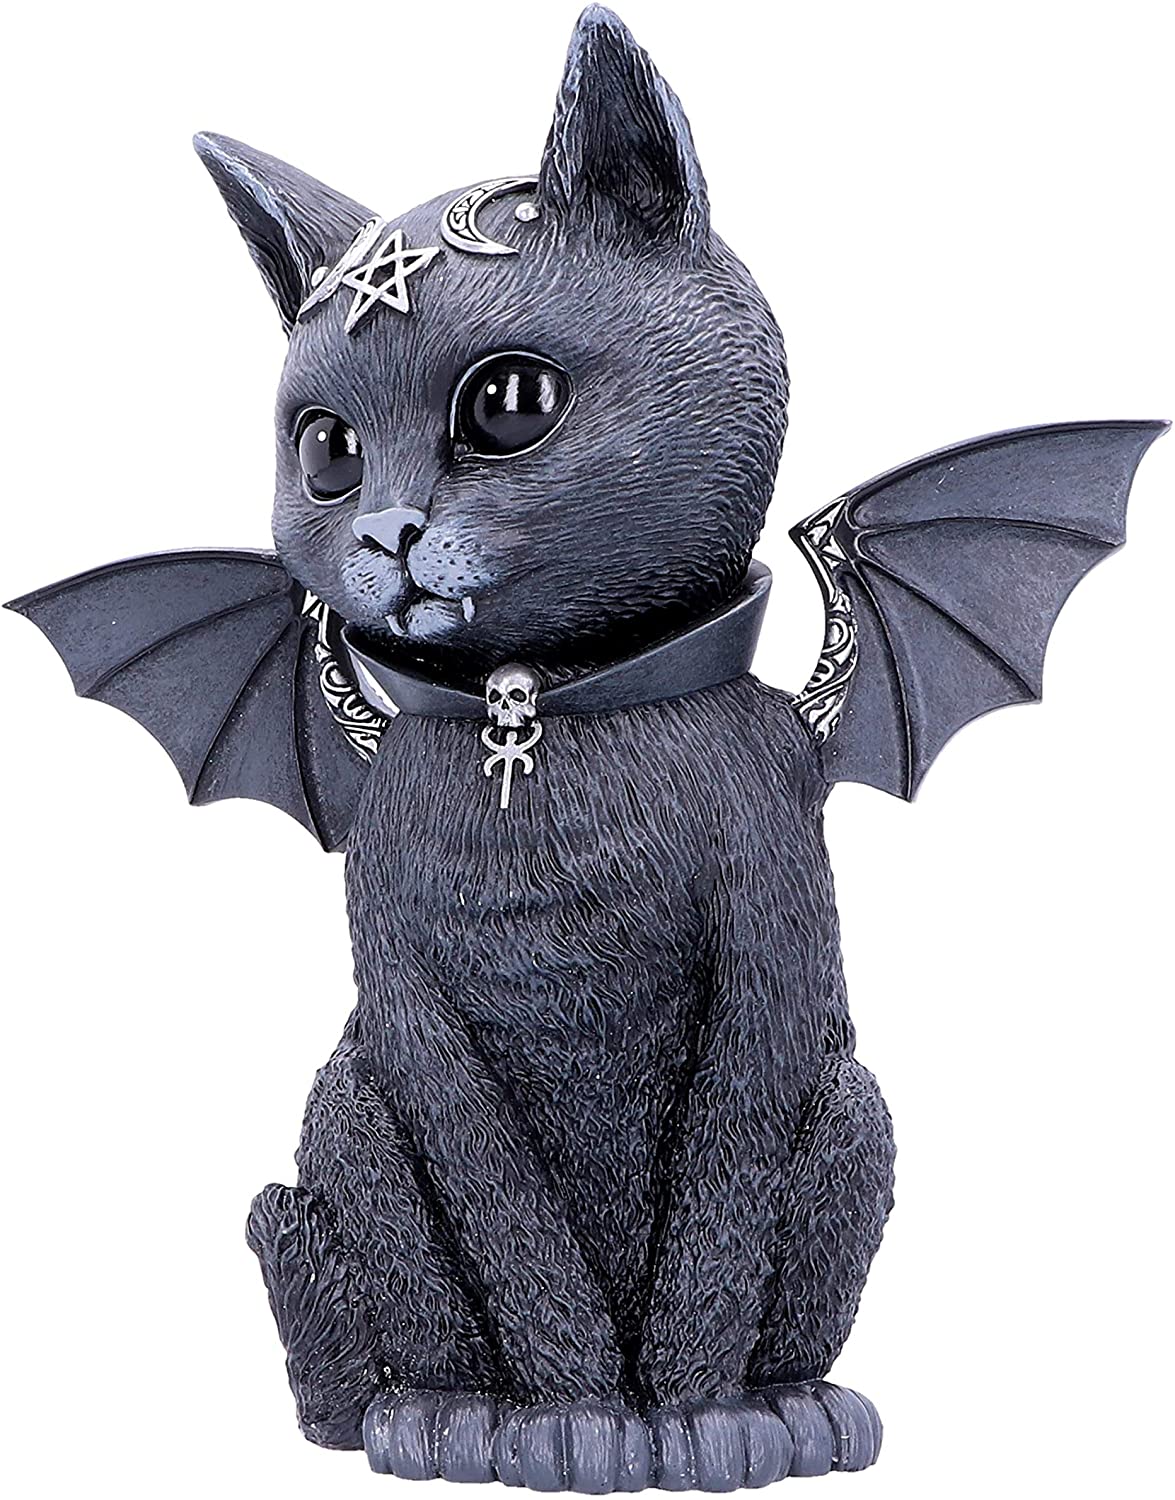 Malpuss - Figurine de chat occulte ailé 24cm